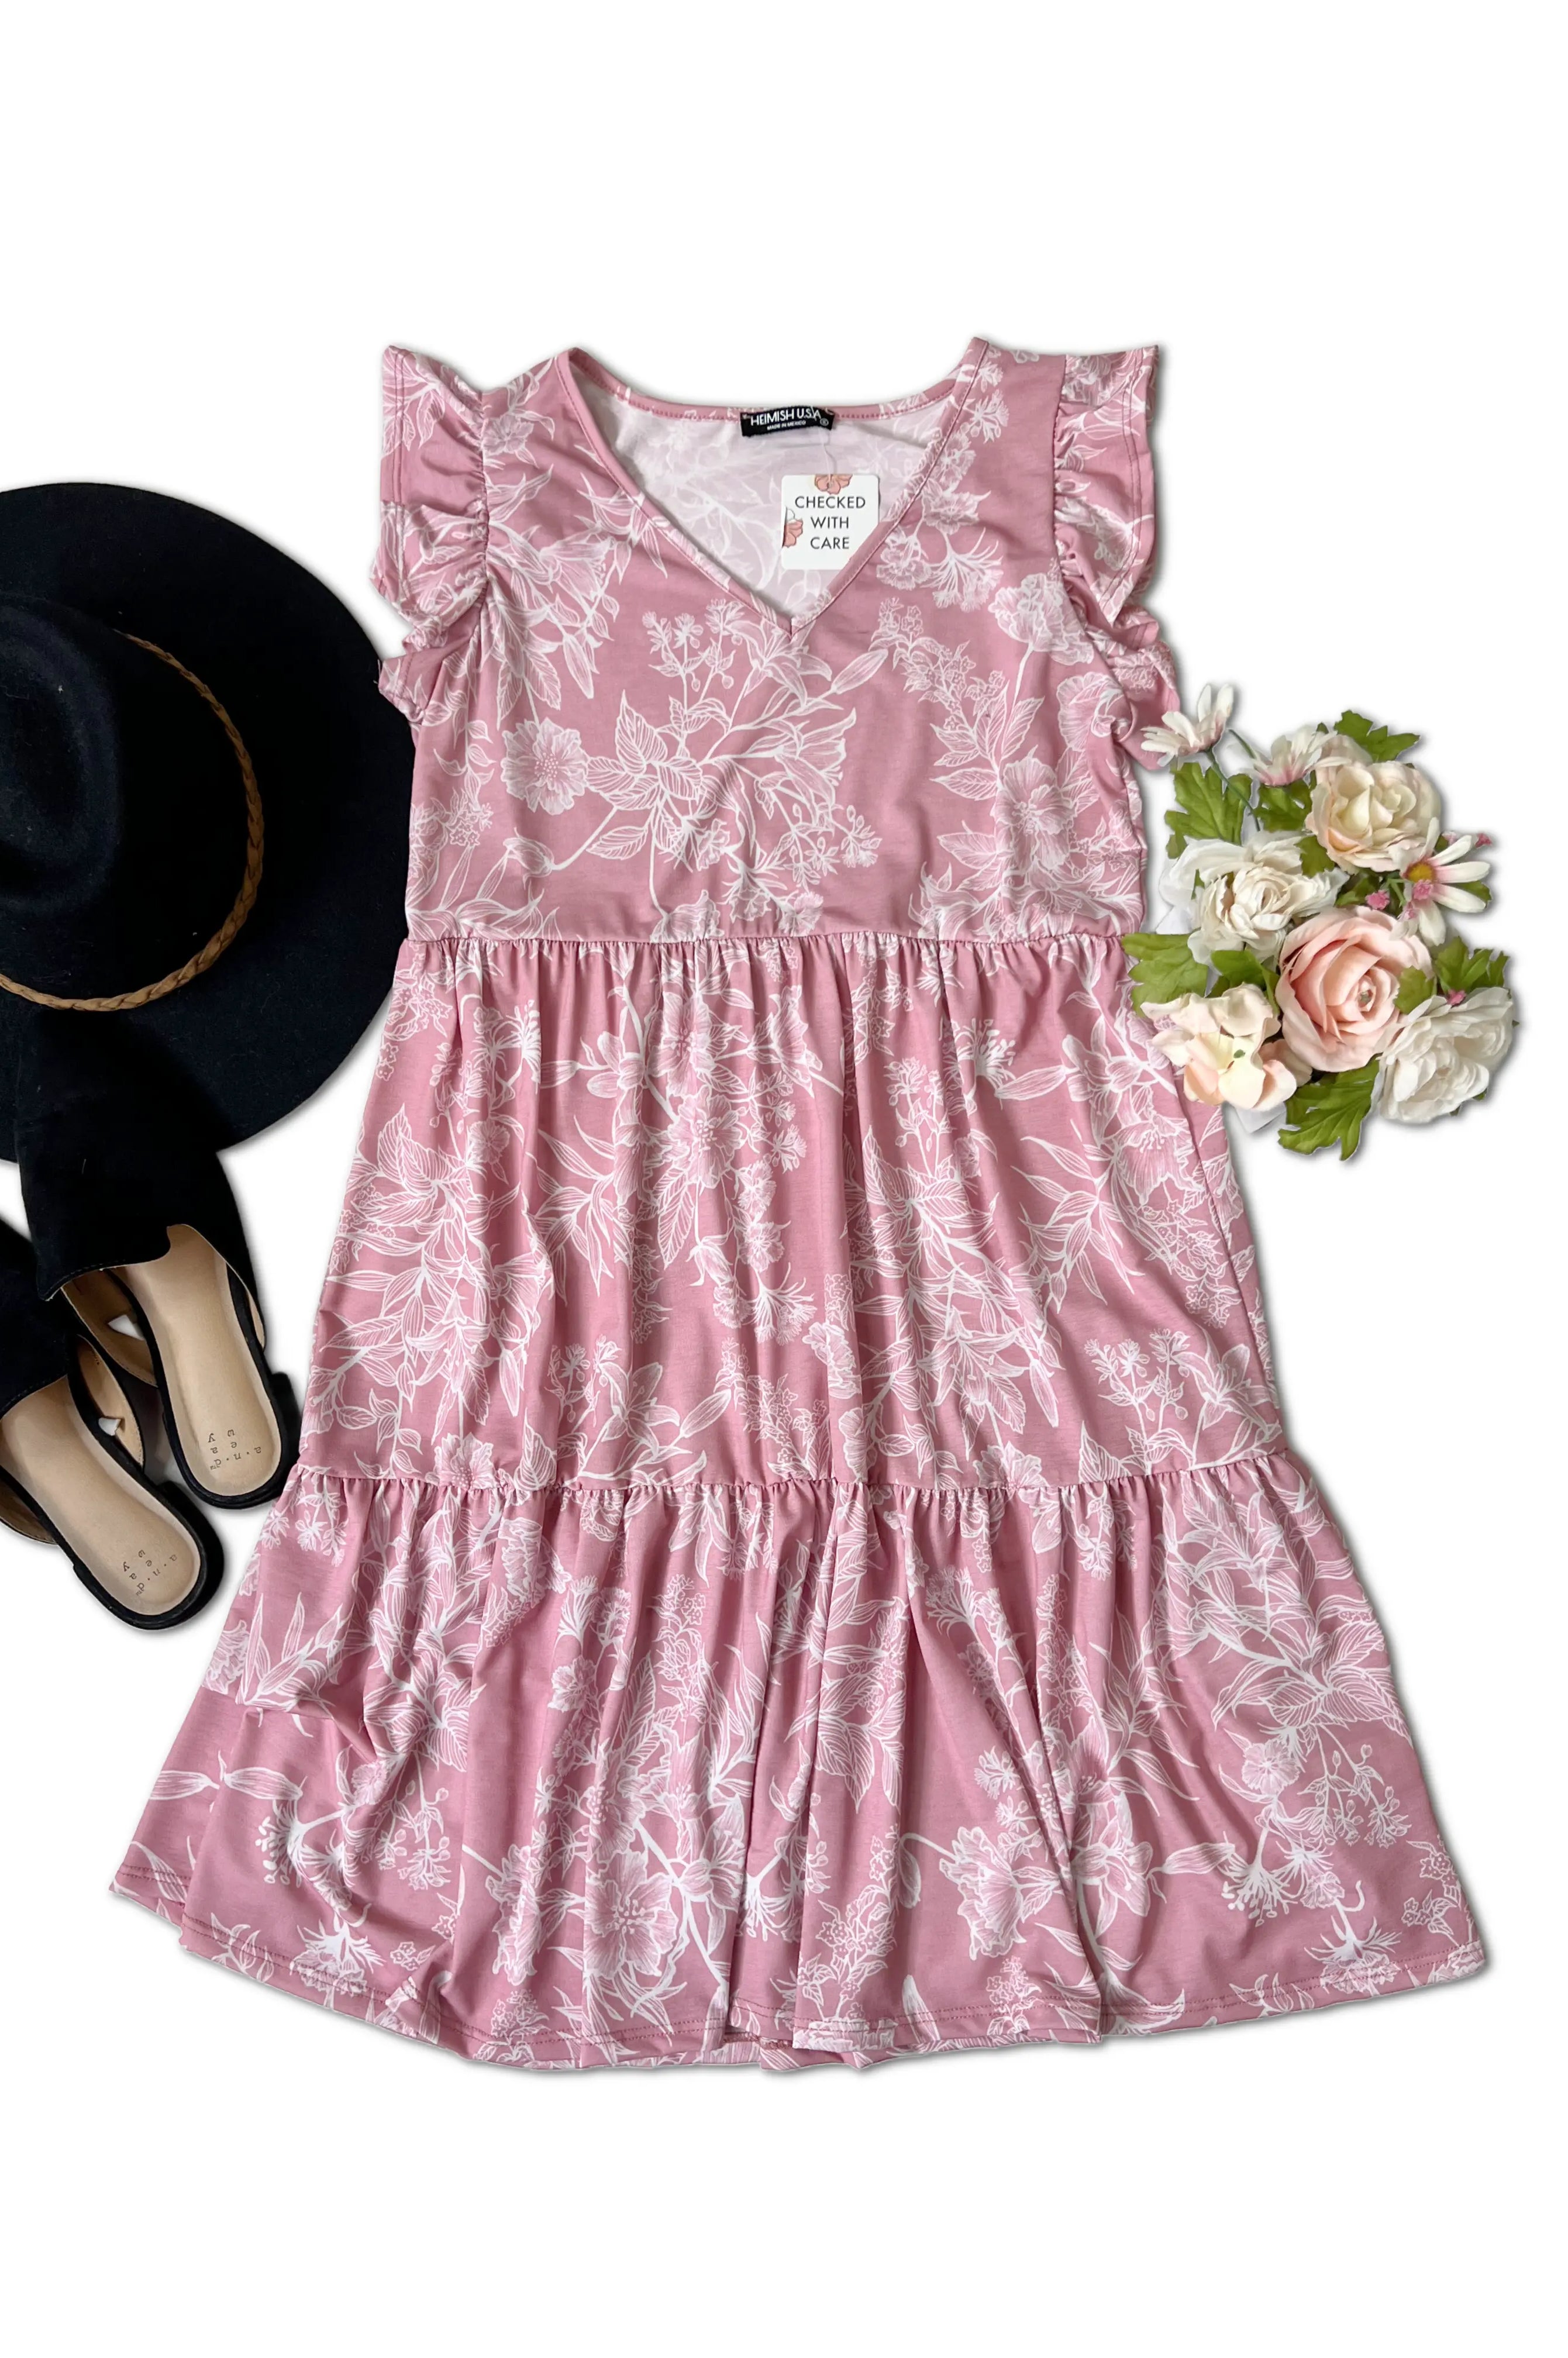 Floral Sophistication -  Dress Boutique Simplified